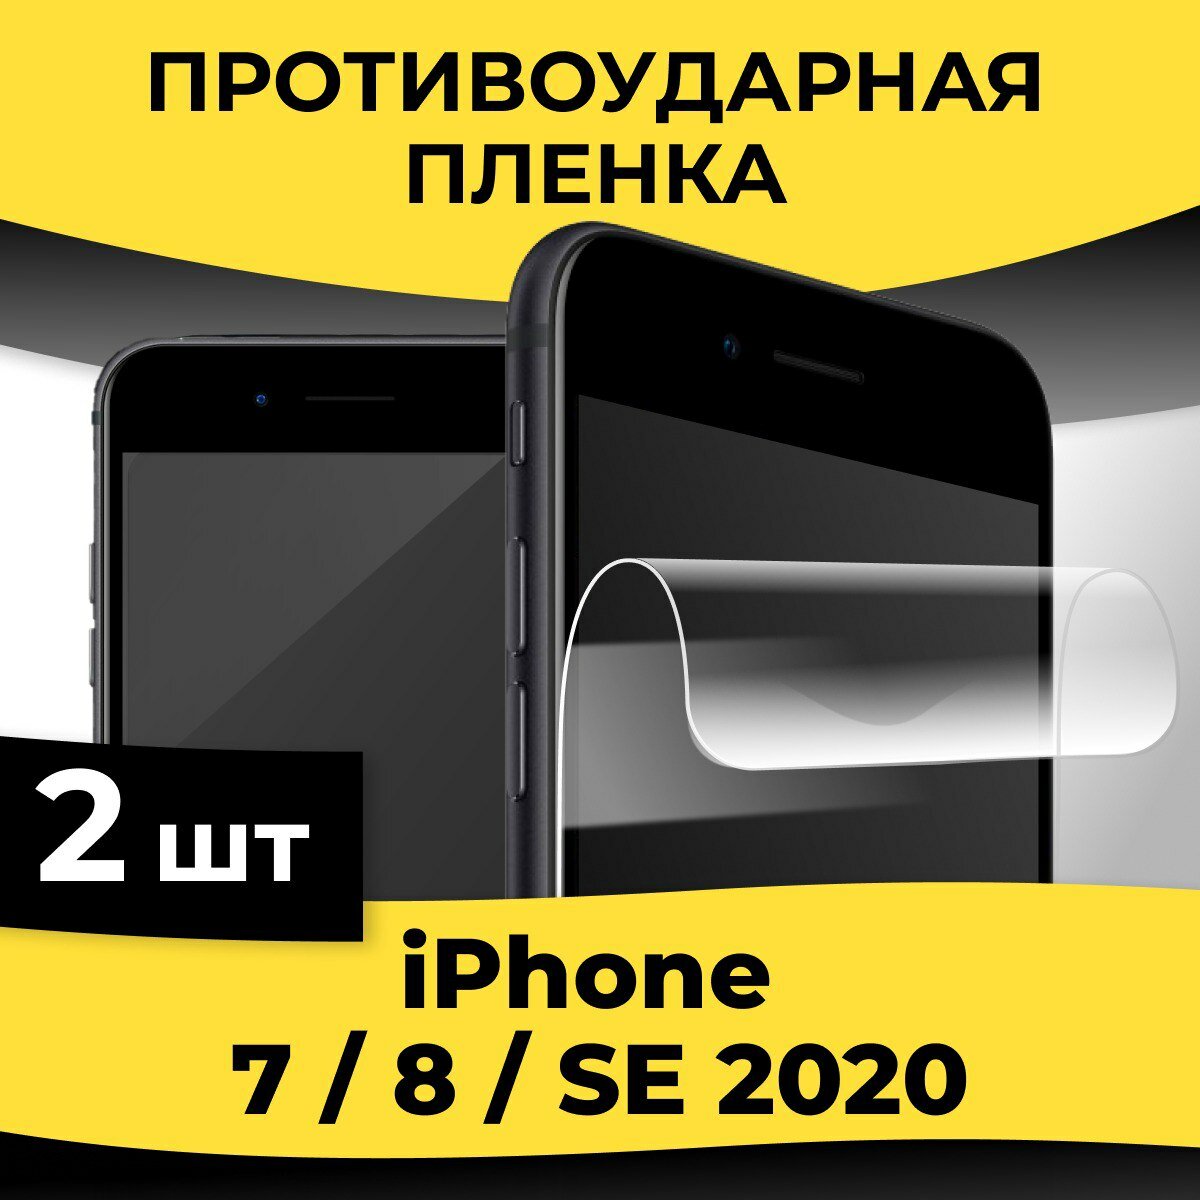 Комплект 2 шт. Глянцевая пленка для смартфона Apple iPhone 7 / 8 / SE 2020 / Защитная пленка на телефон Эпл Айфон 7 / 8 / СЕ 2020